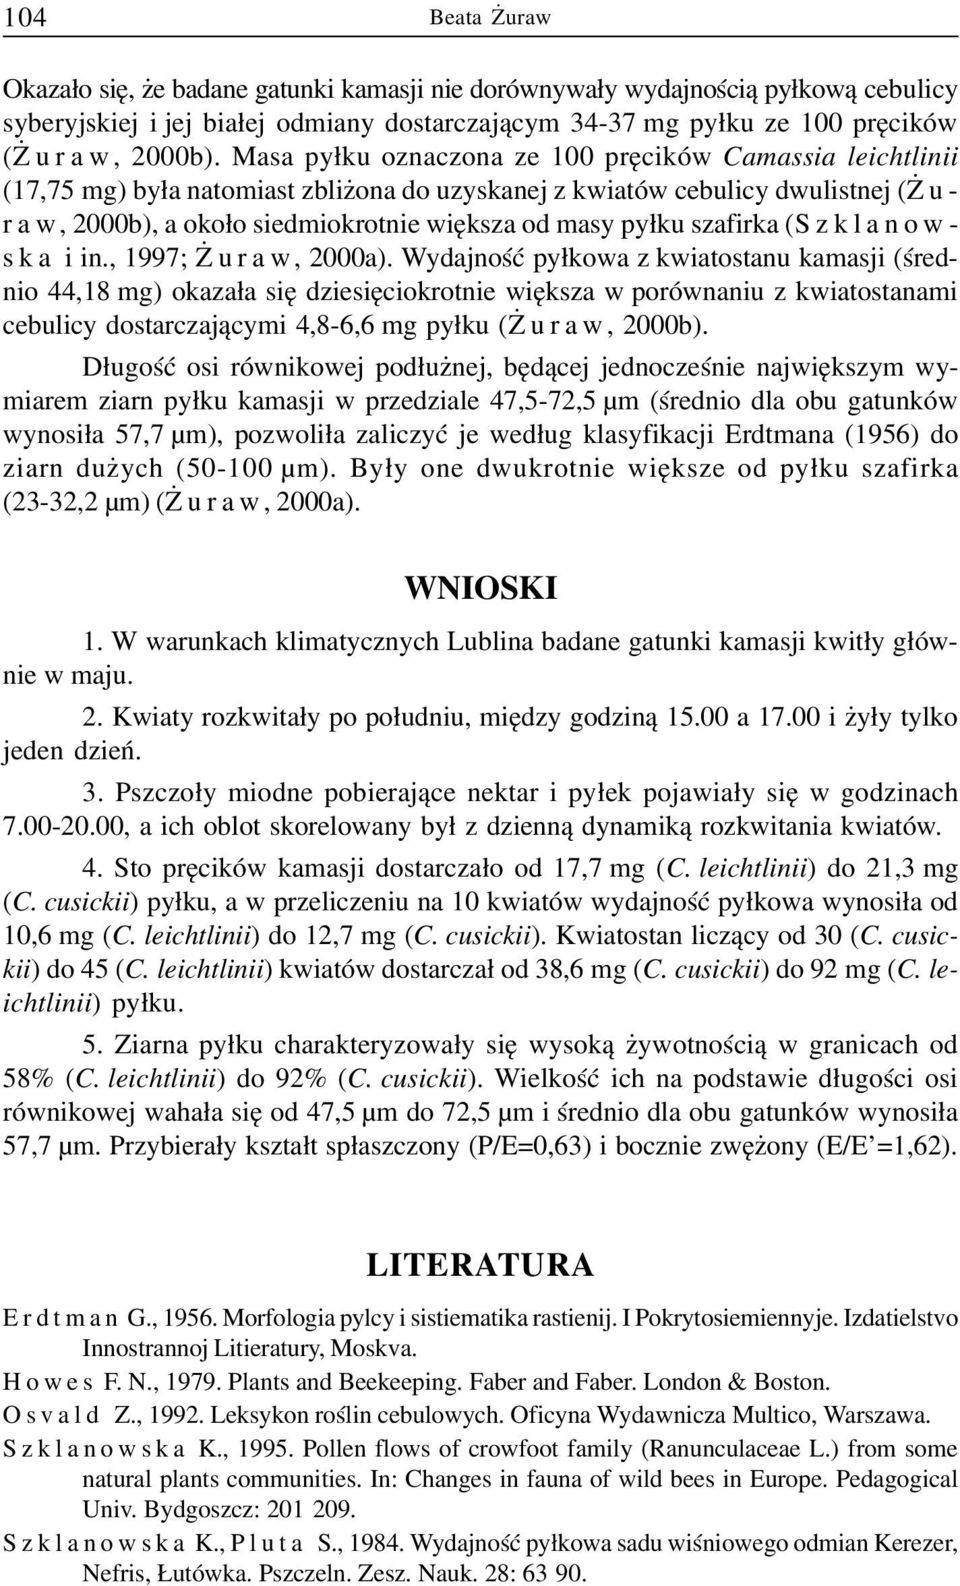 py³ku szafirka (Szklanows k a i in., 1997; uraw, 2000a).